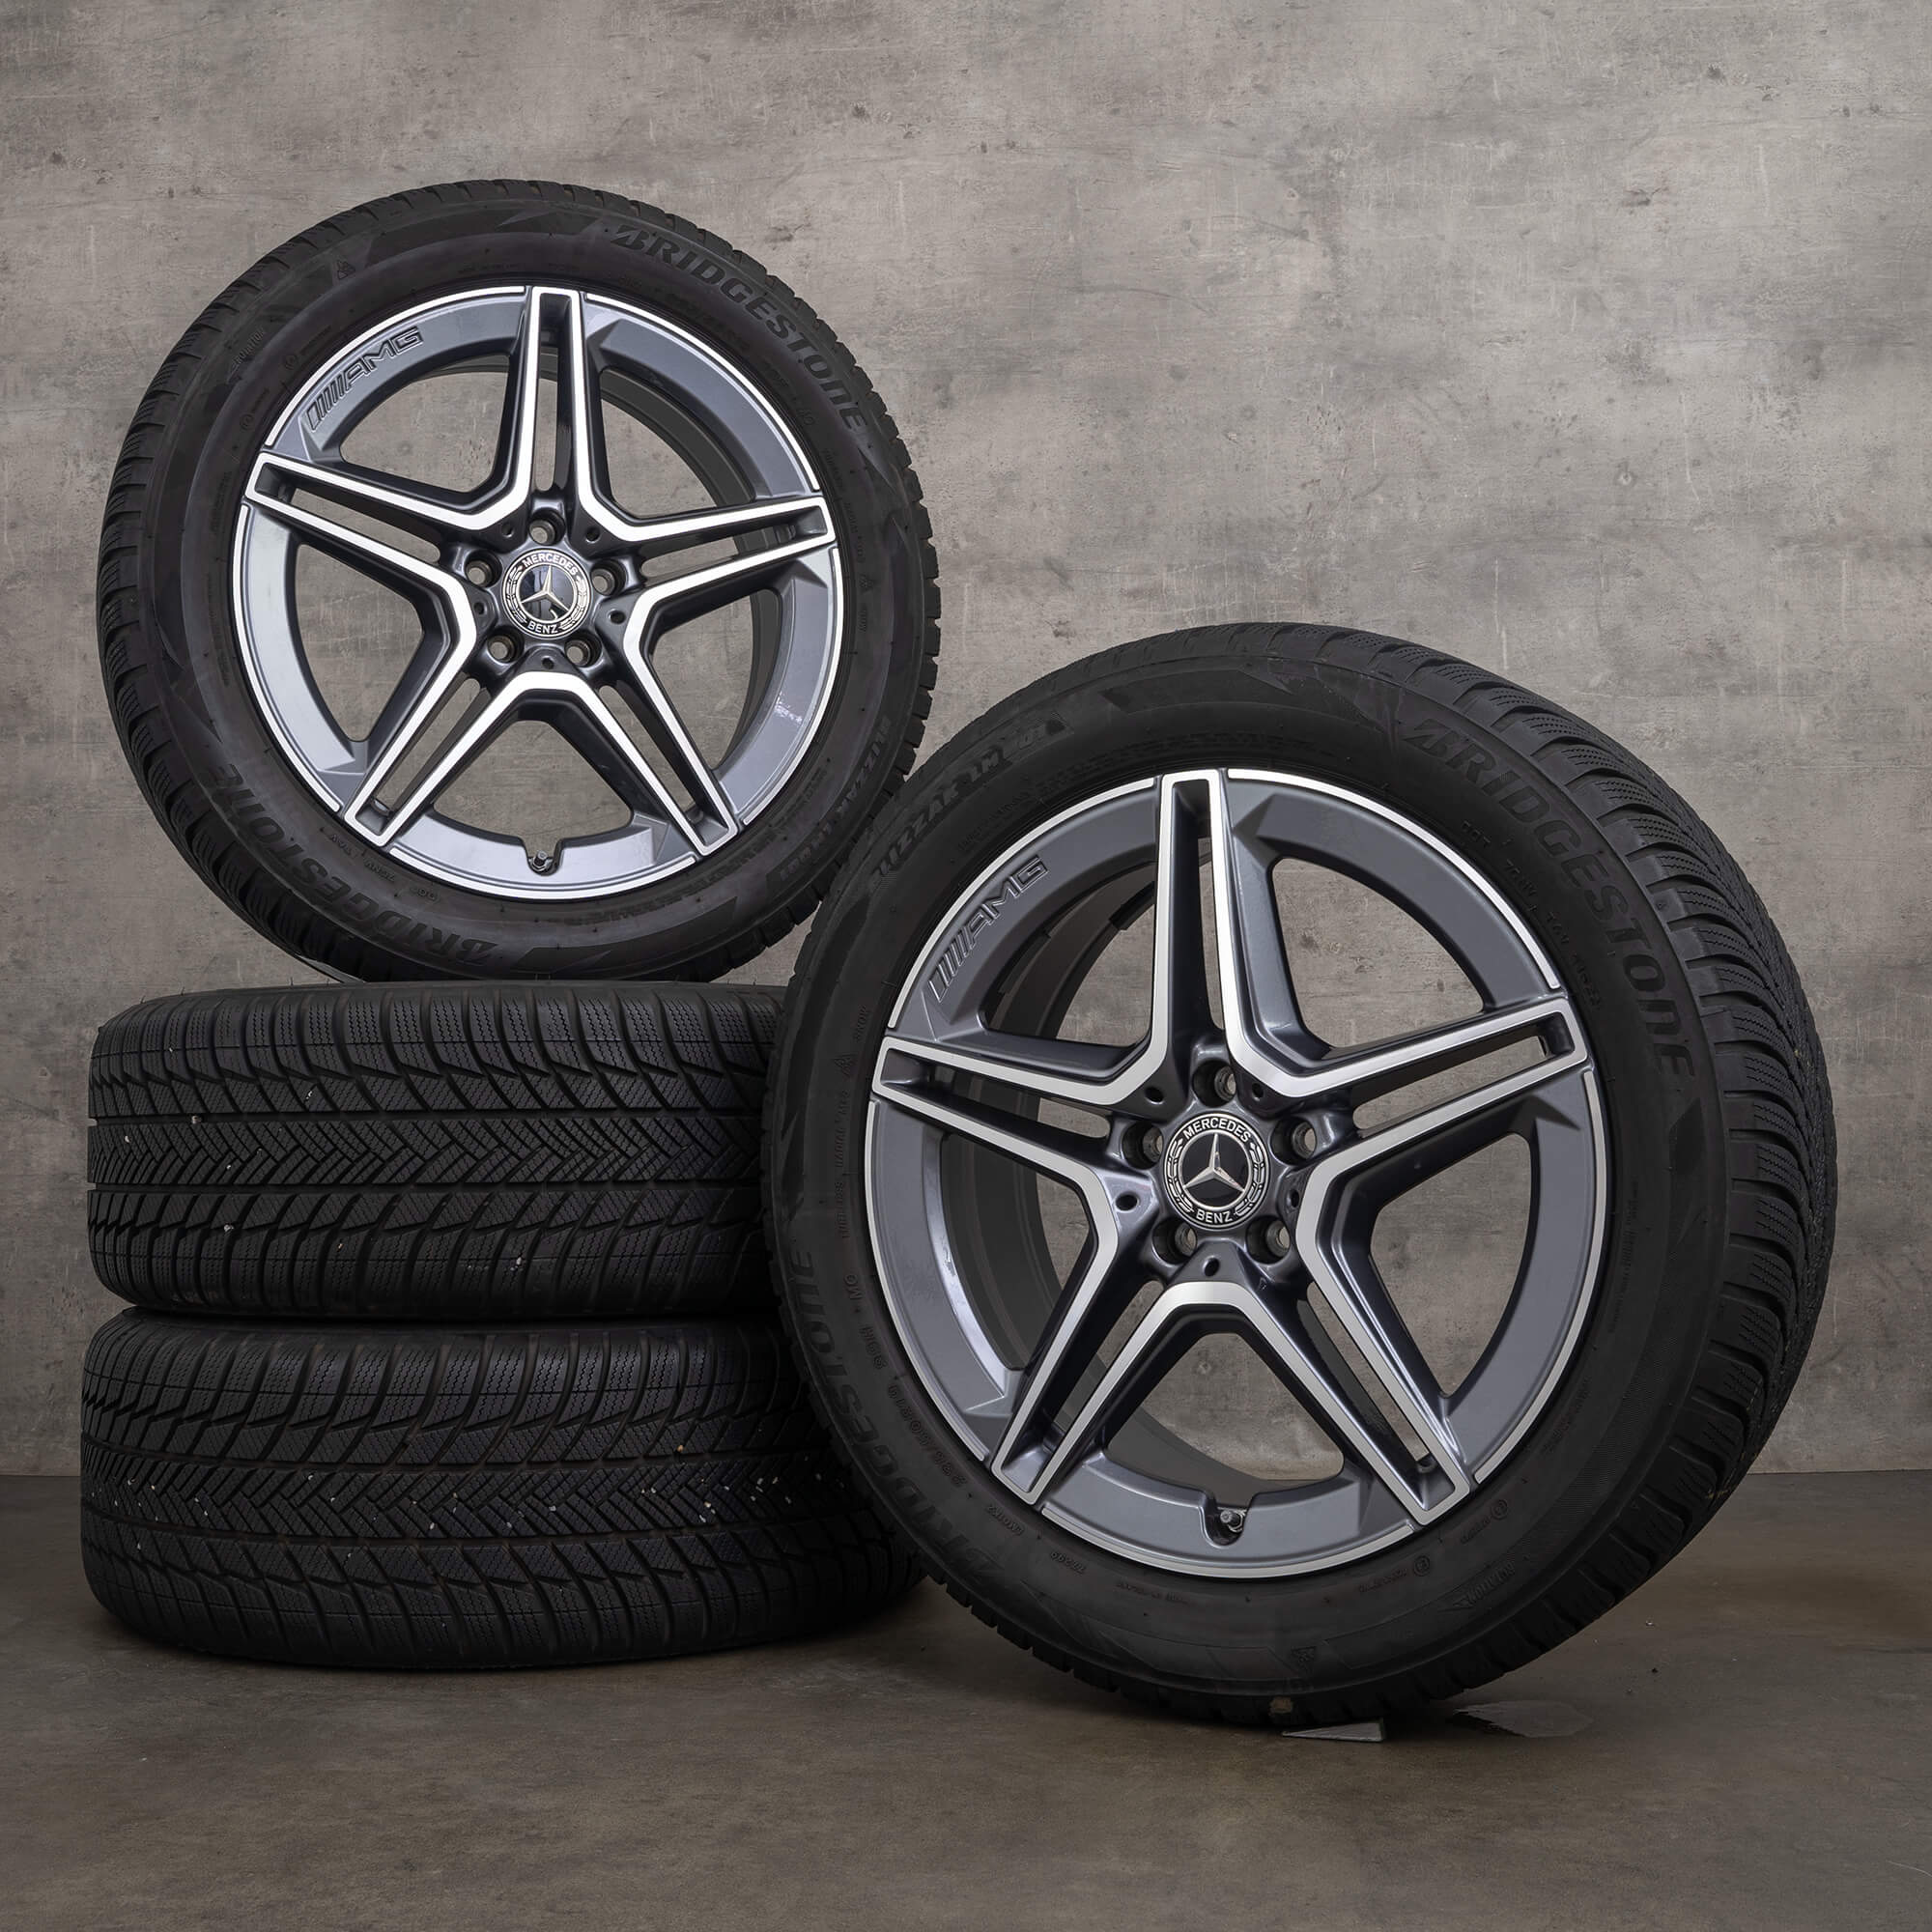 OEM AMG Mercedes GLA H247 GLB X247 19 inch winter tires rims A2474011500 himalaya grey high-sheen